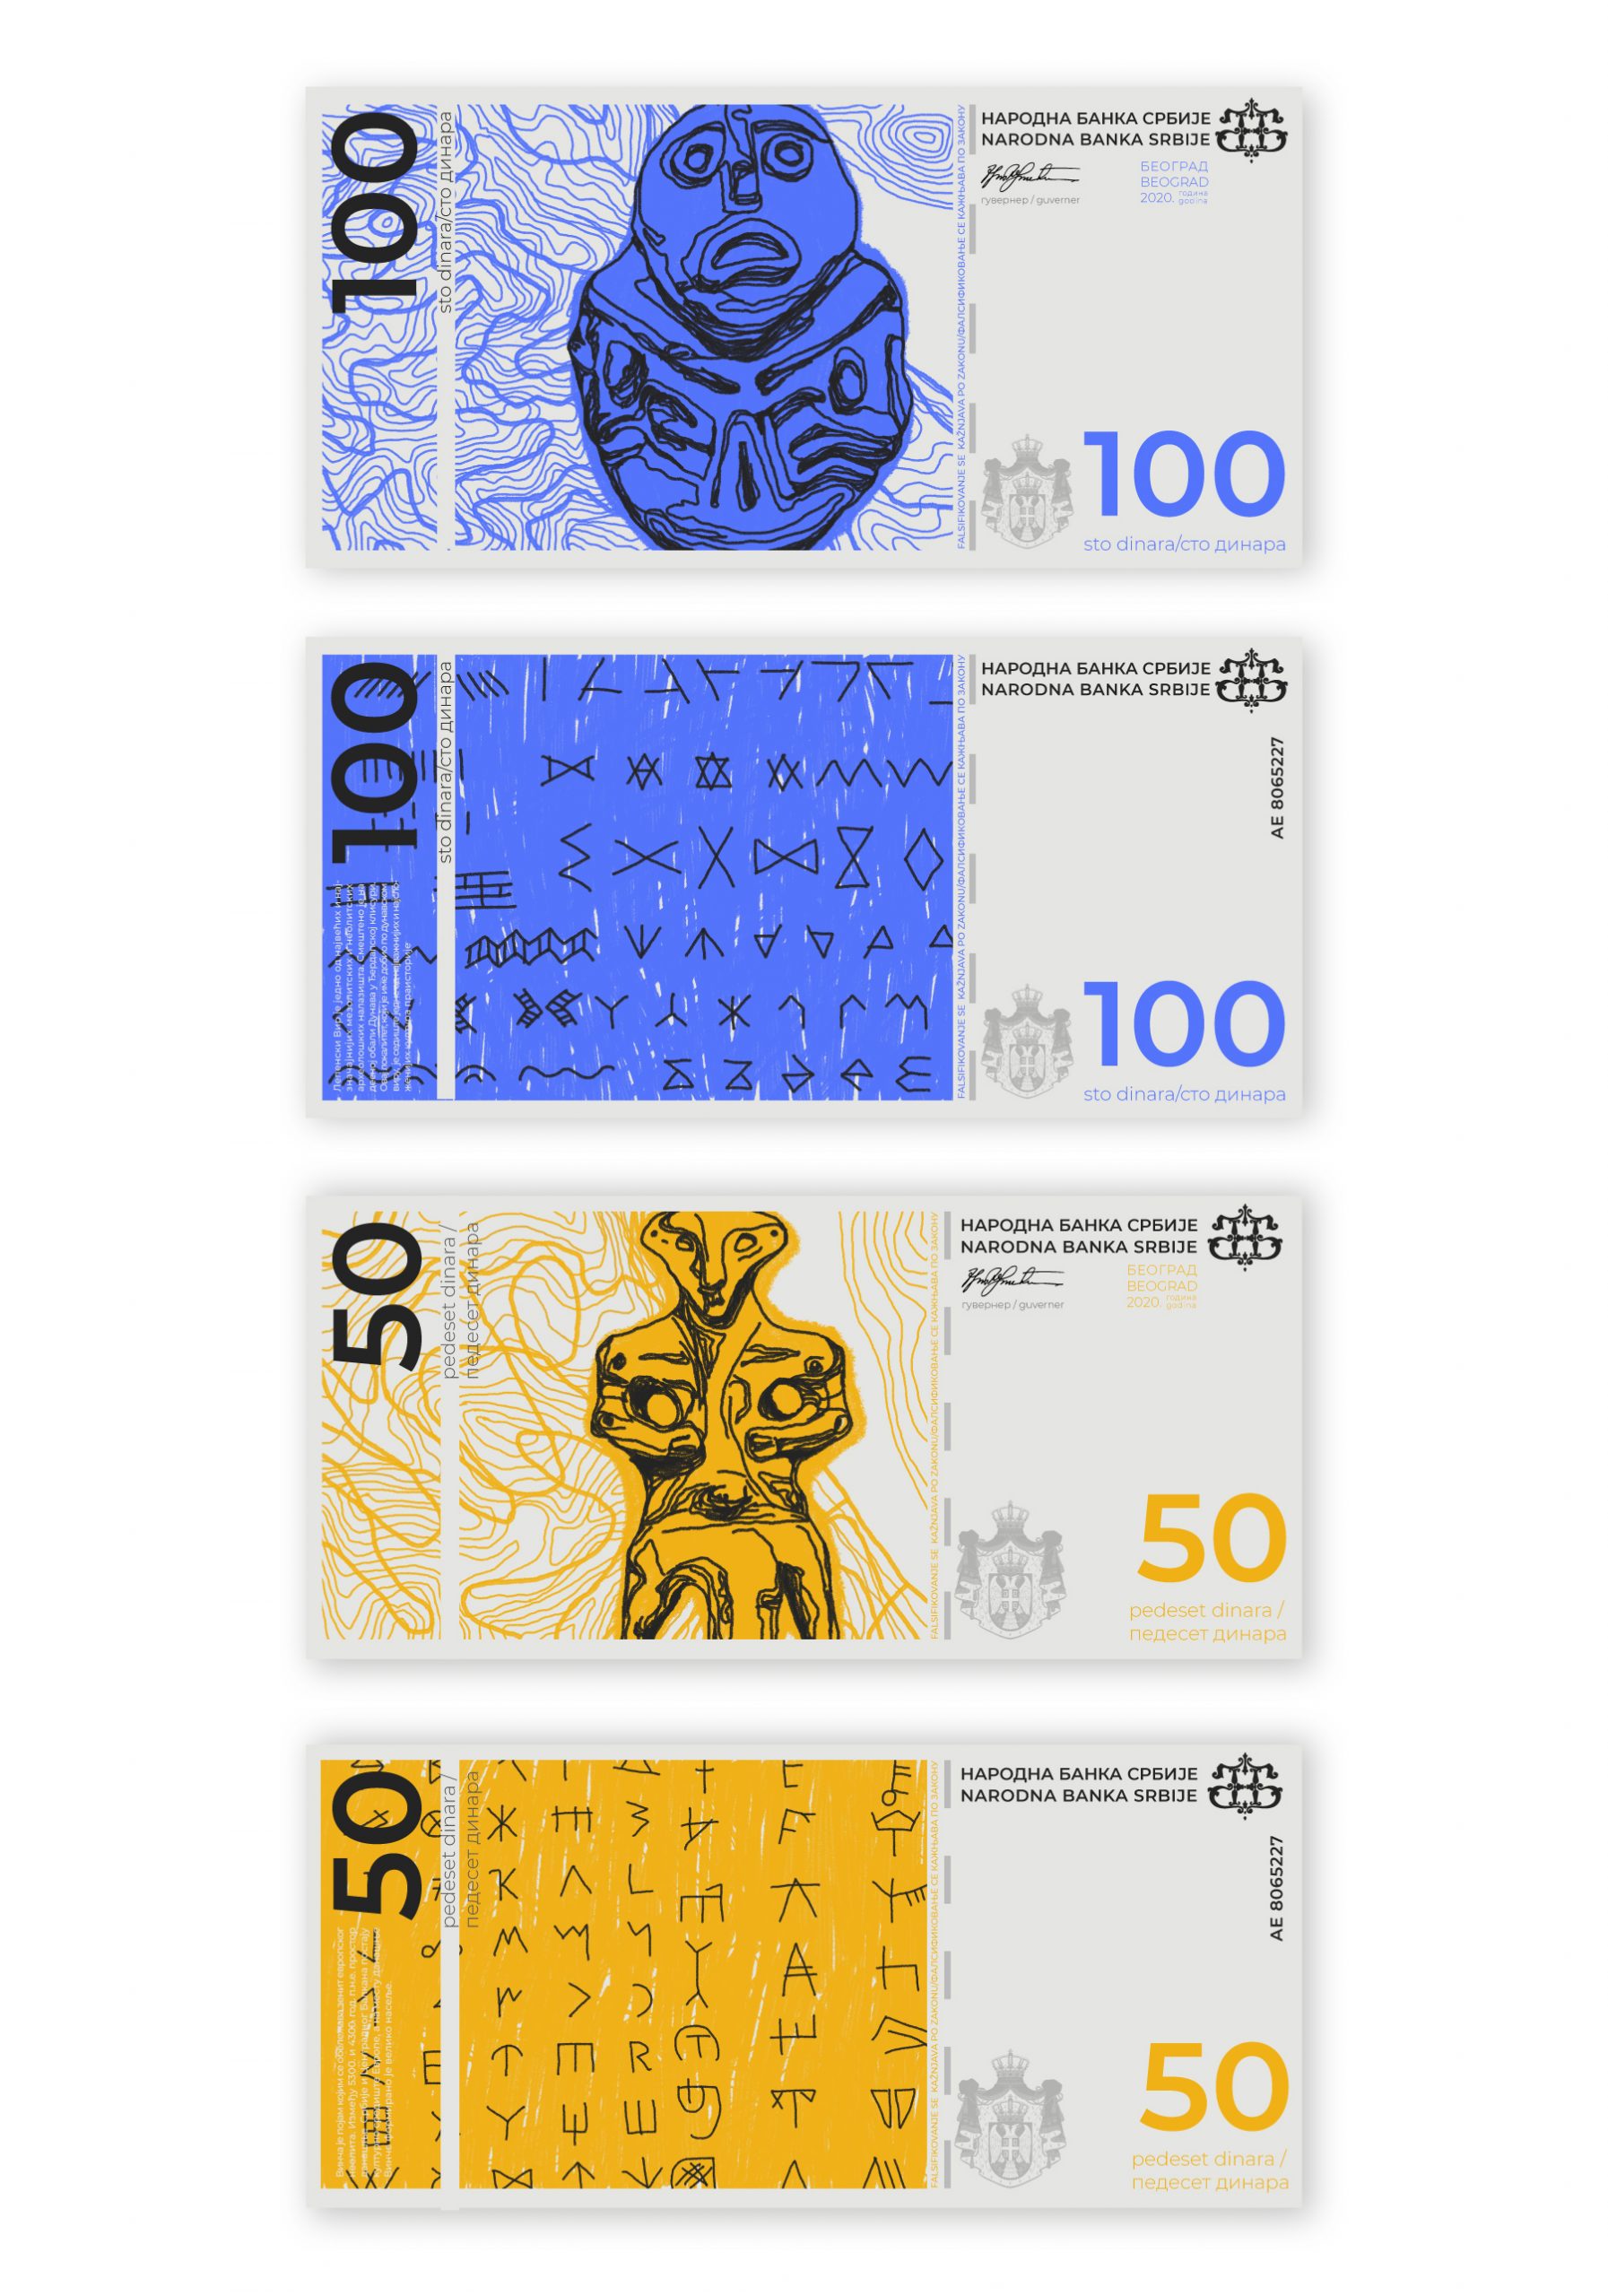 01 Vrednosni papiri, dizajn novčanice srpskog dinara